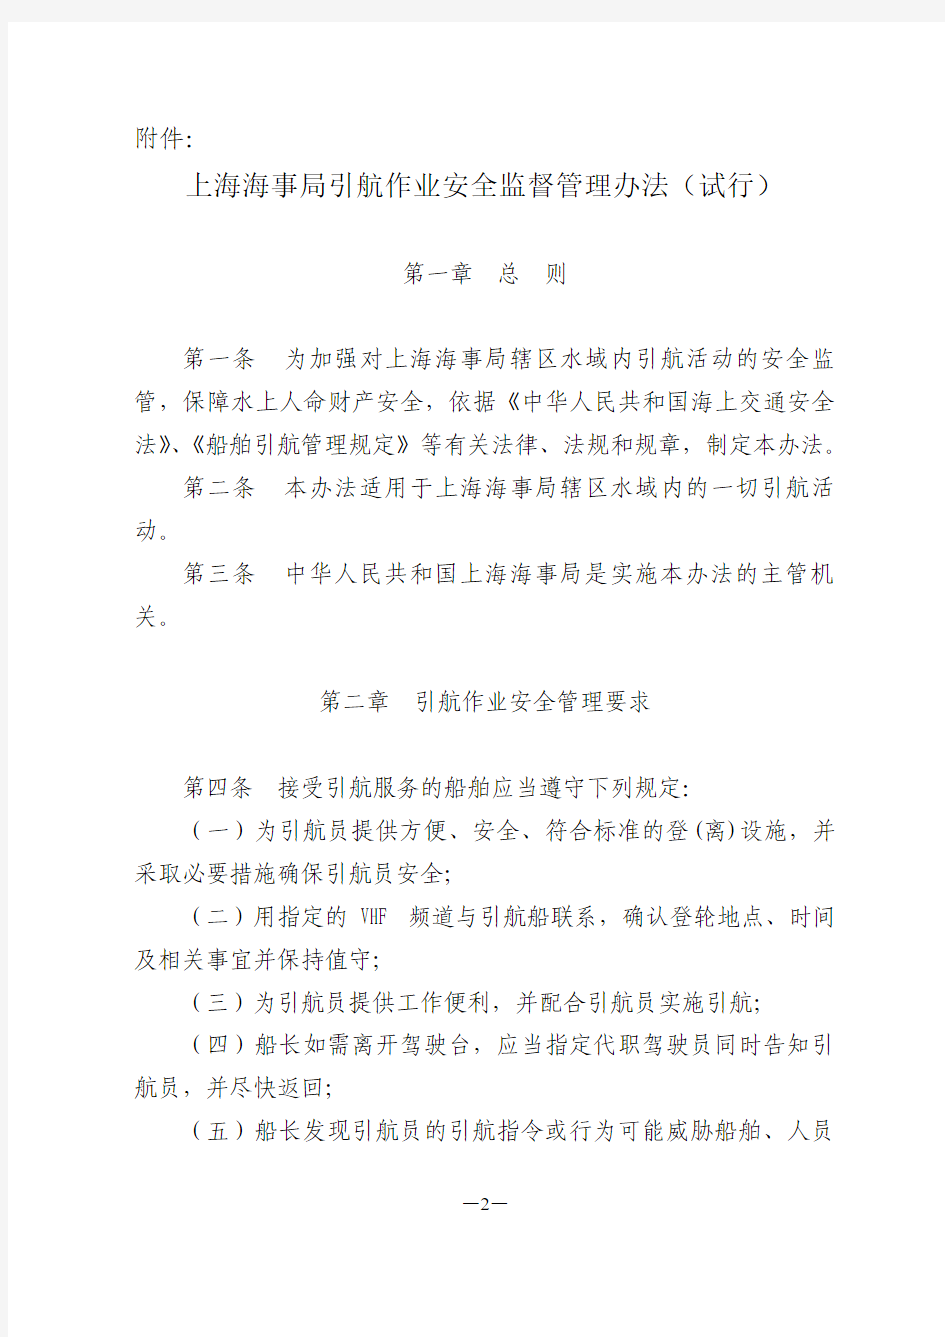 关于公布《上海海事局引航作业安全监督管理办法(试行)》的通知